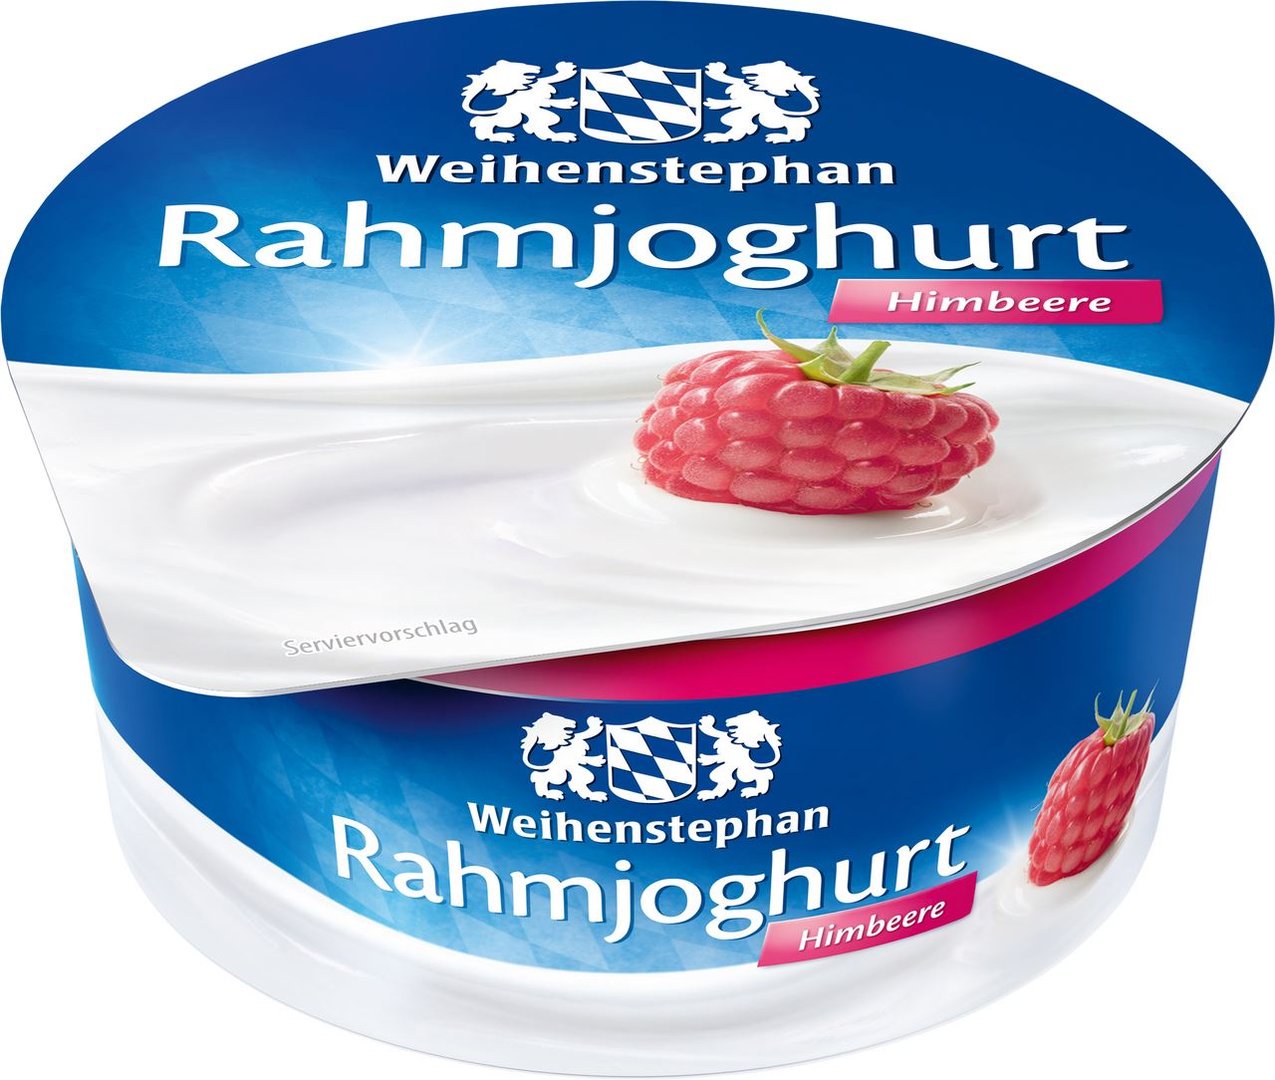 Weihenstephan - Rahmjoghurt Himbeere 10 % Fett im Milchanteil - 150 g Becher